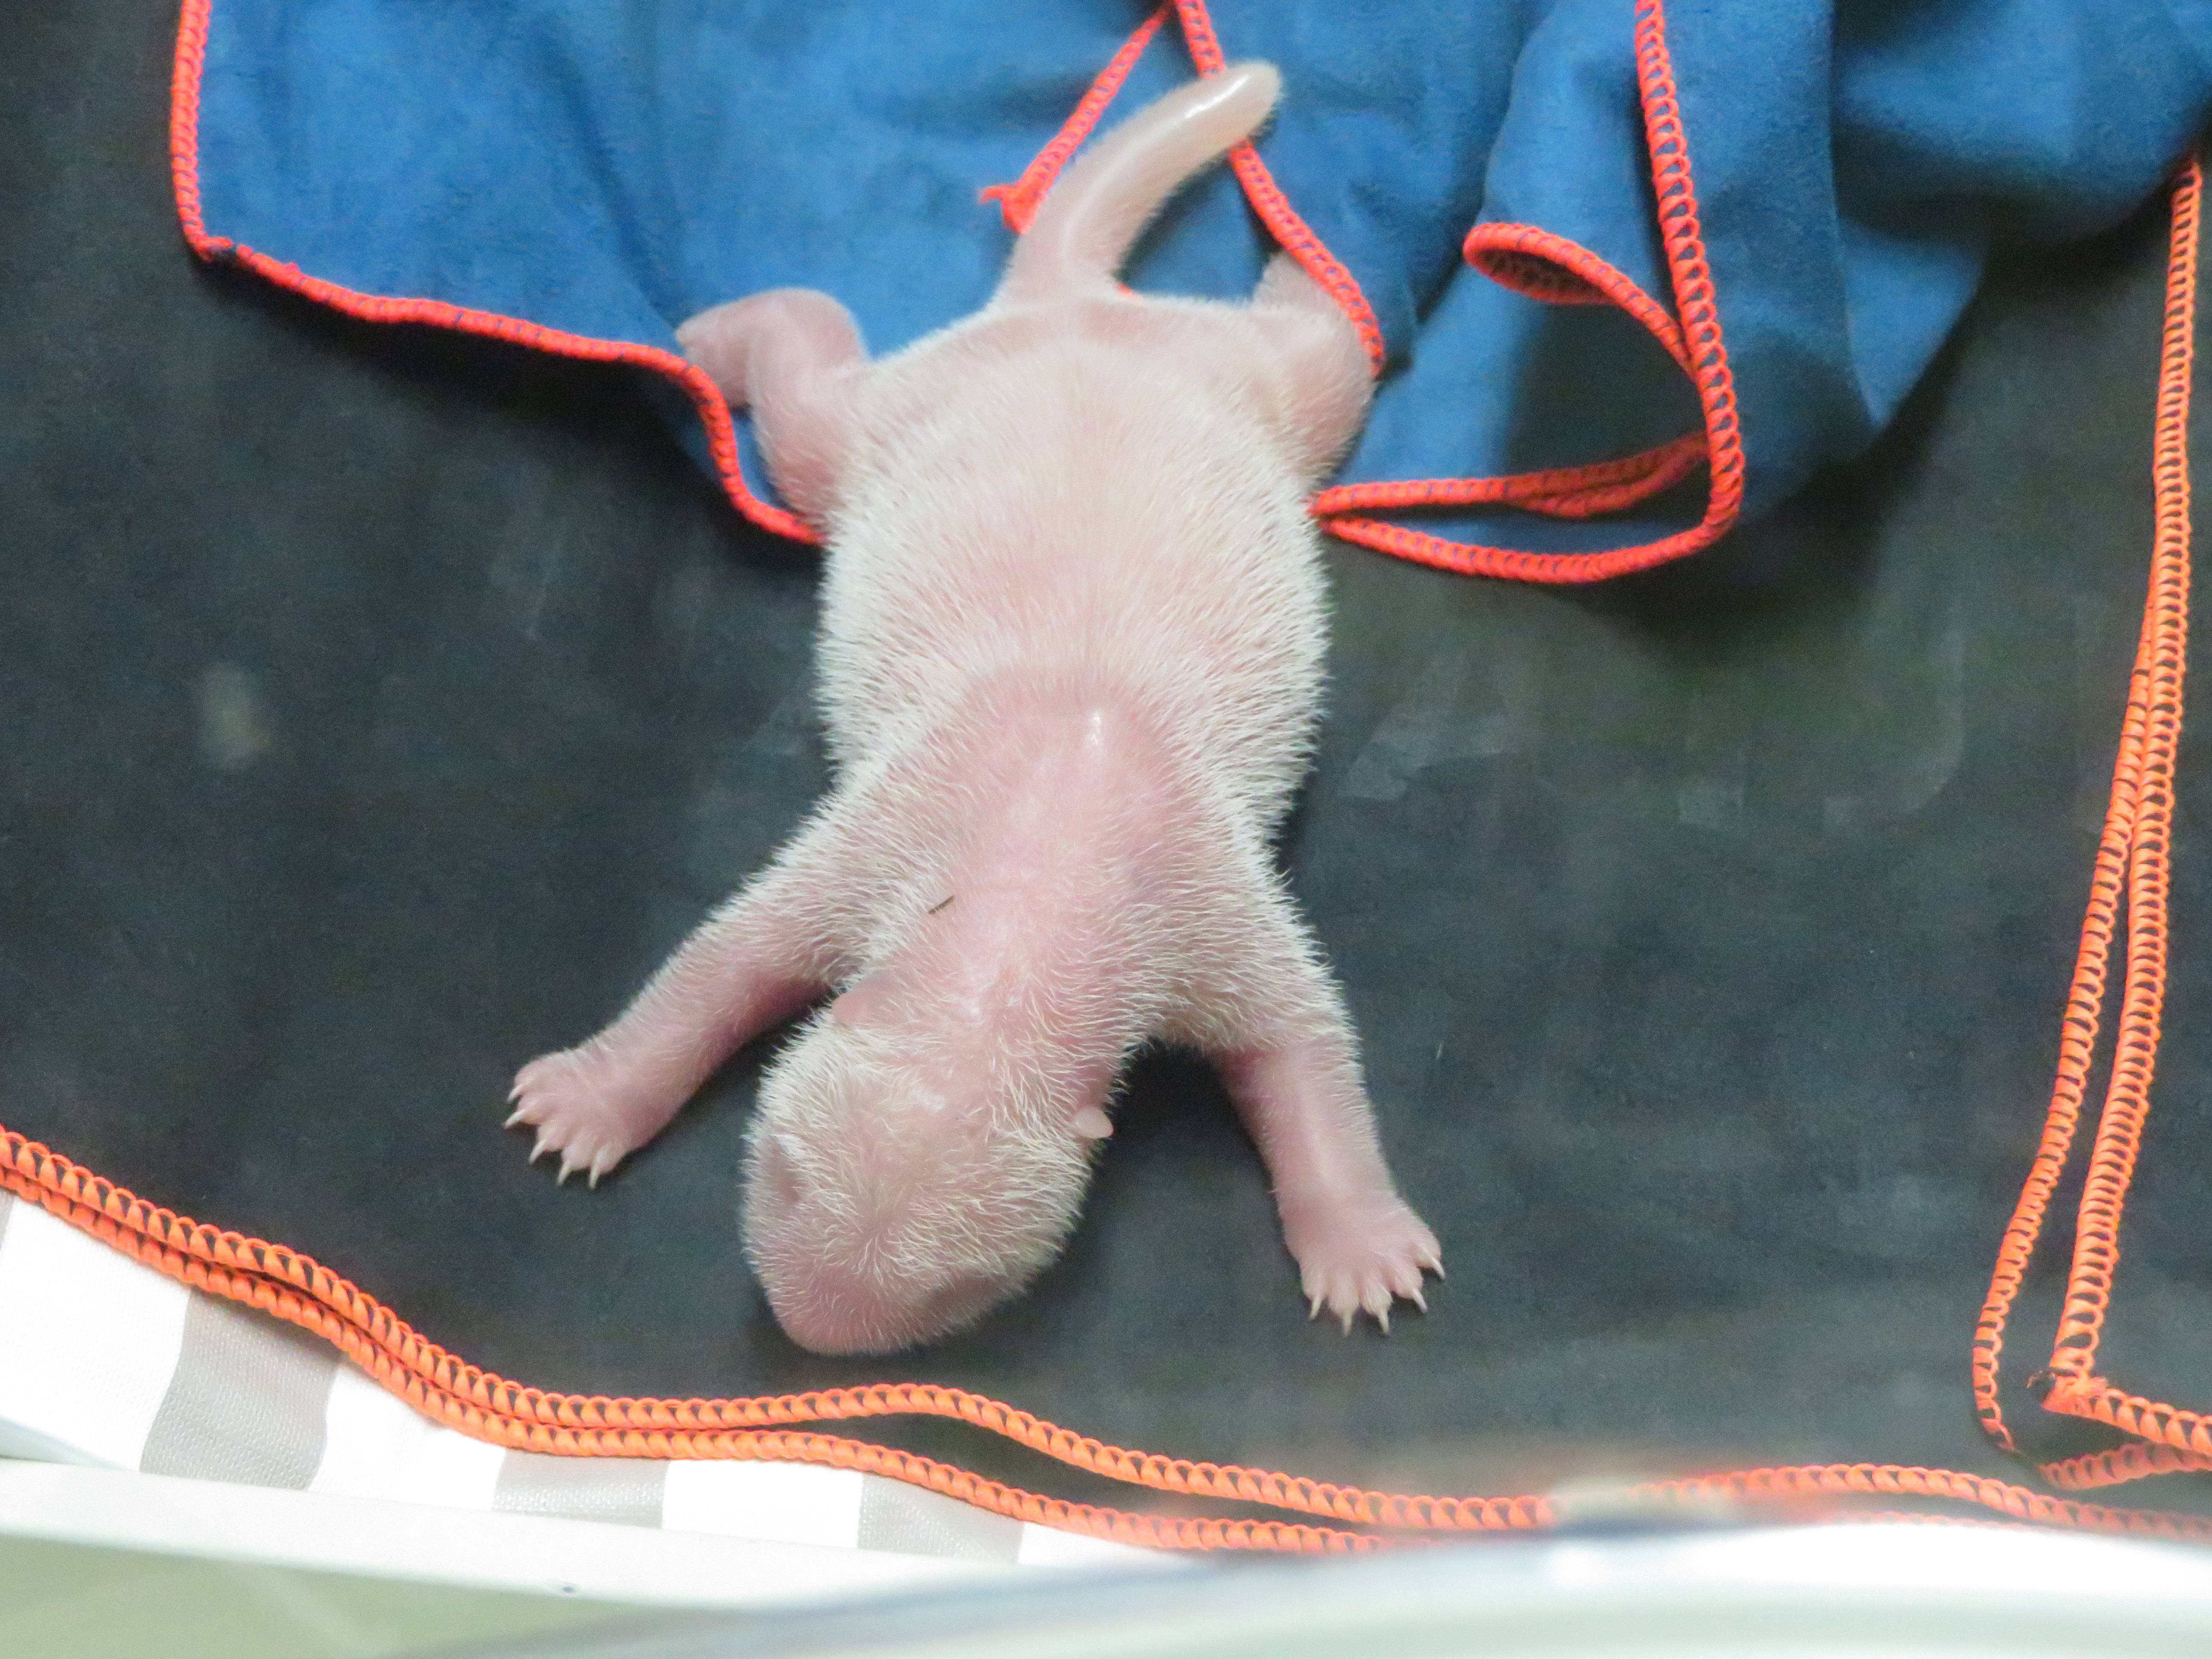 刚出生的熊猫仔图片